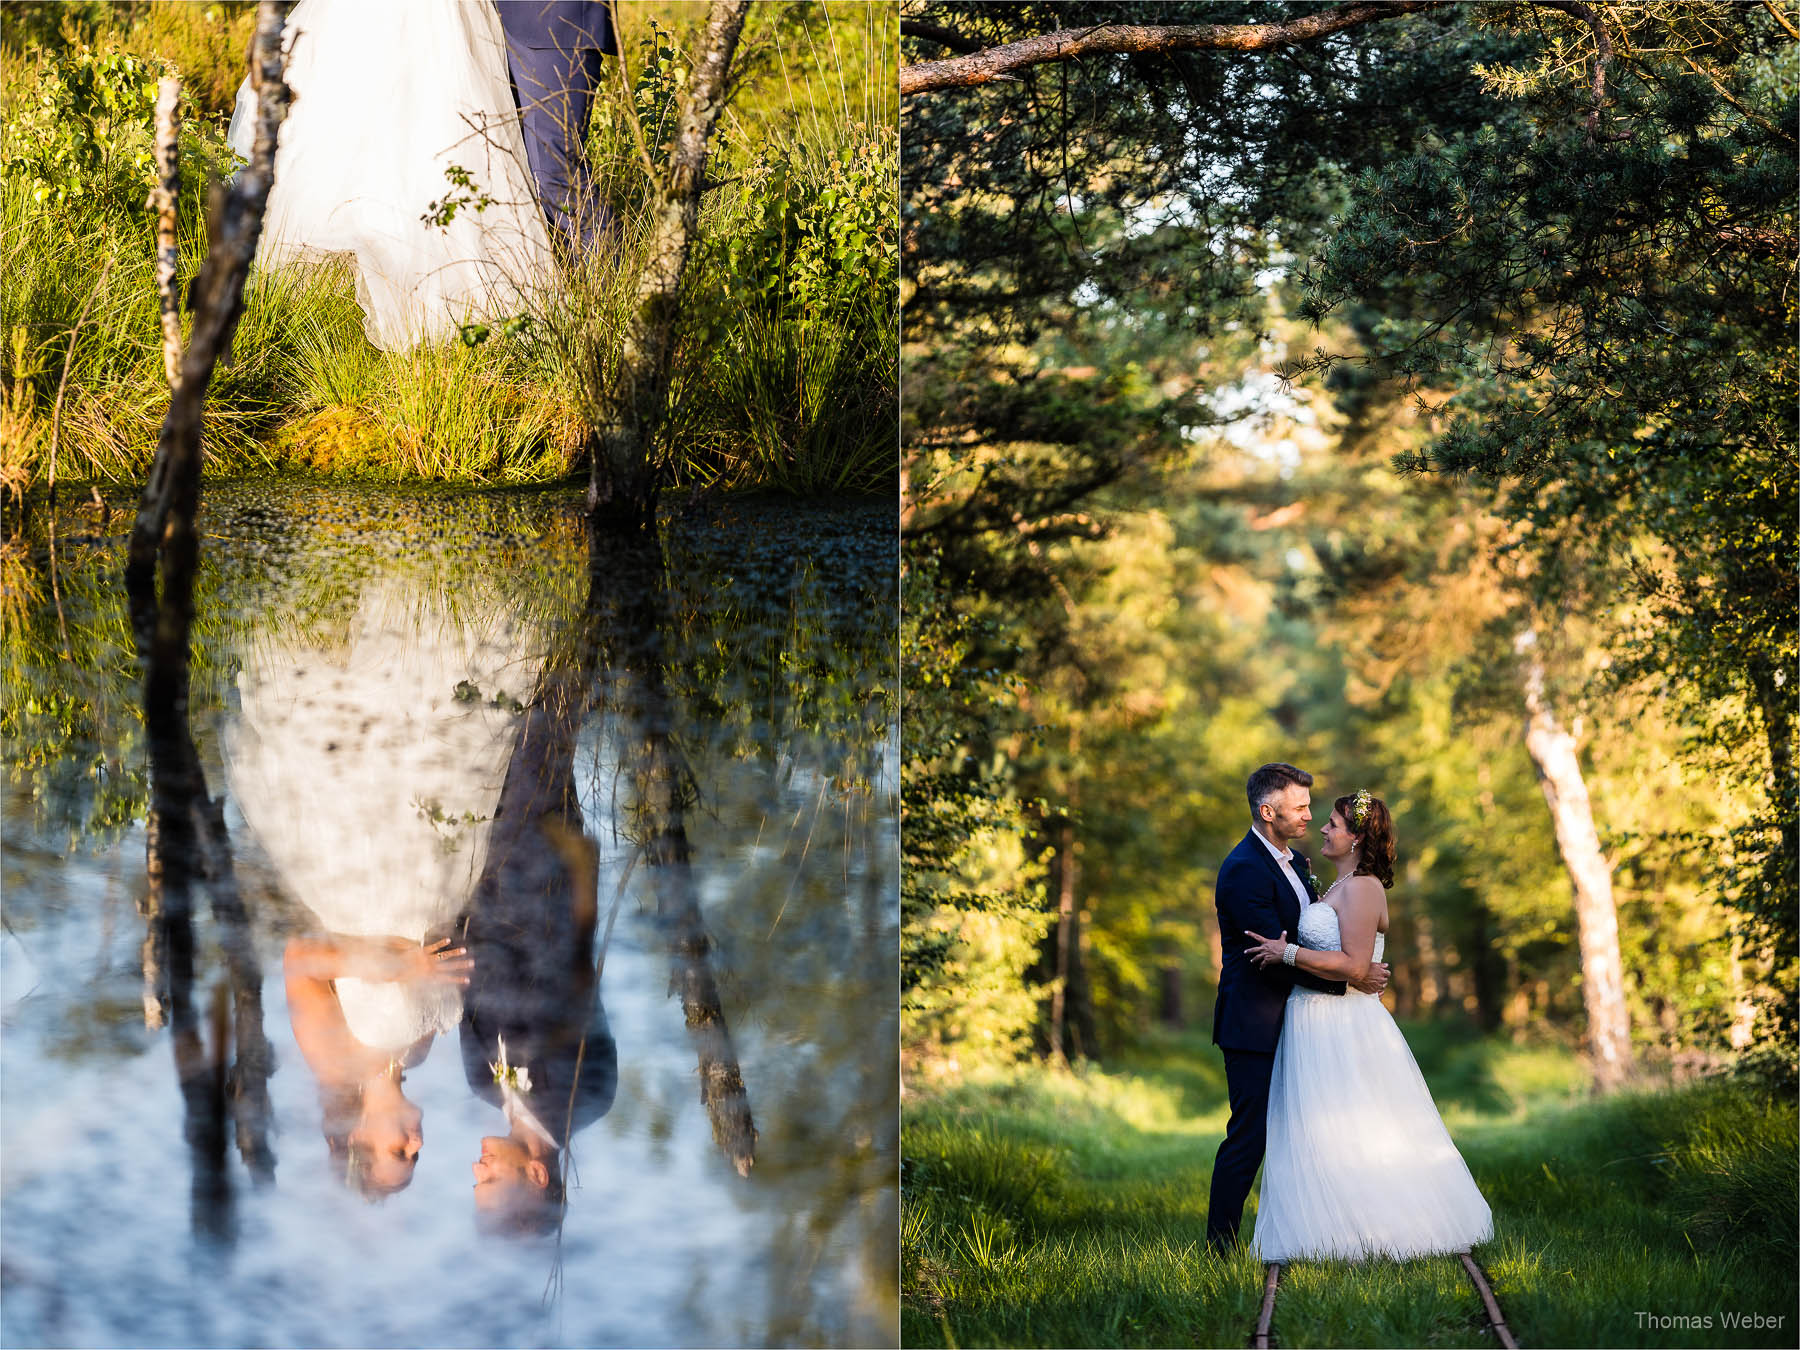 Hochzeitsfotos in der Natur, Hochzeitsfotograf Ostfriesland